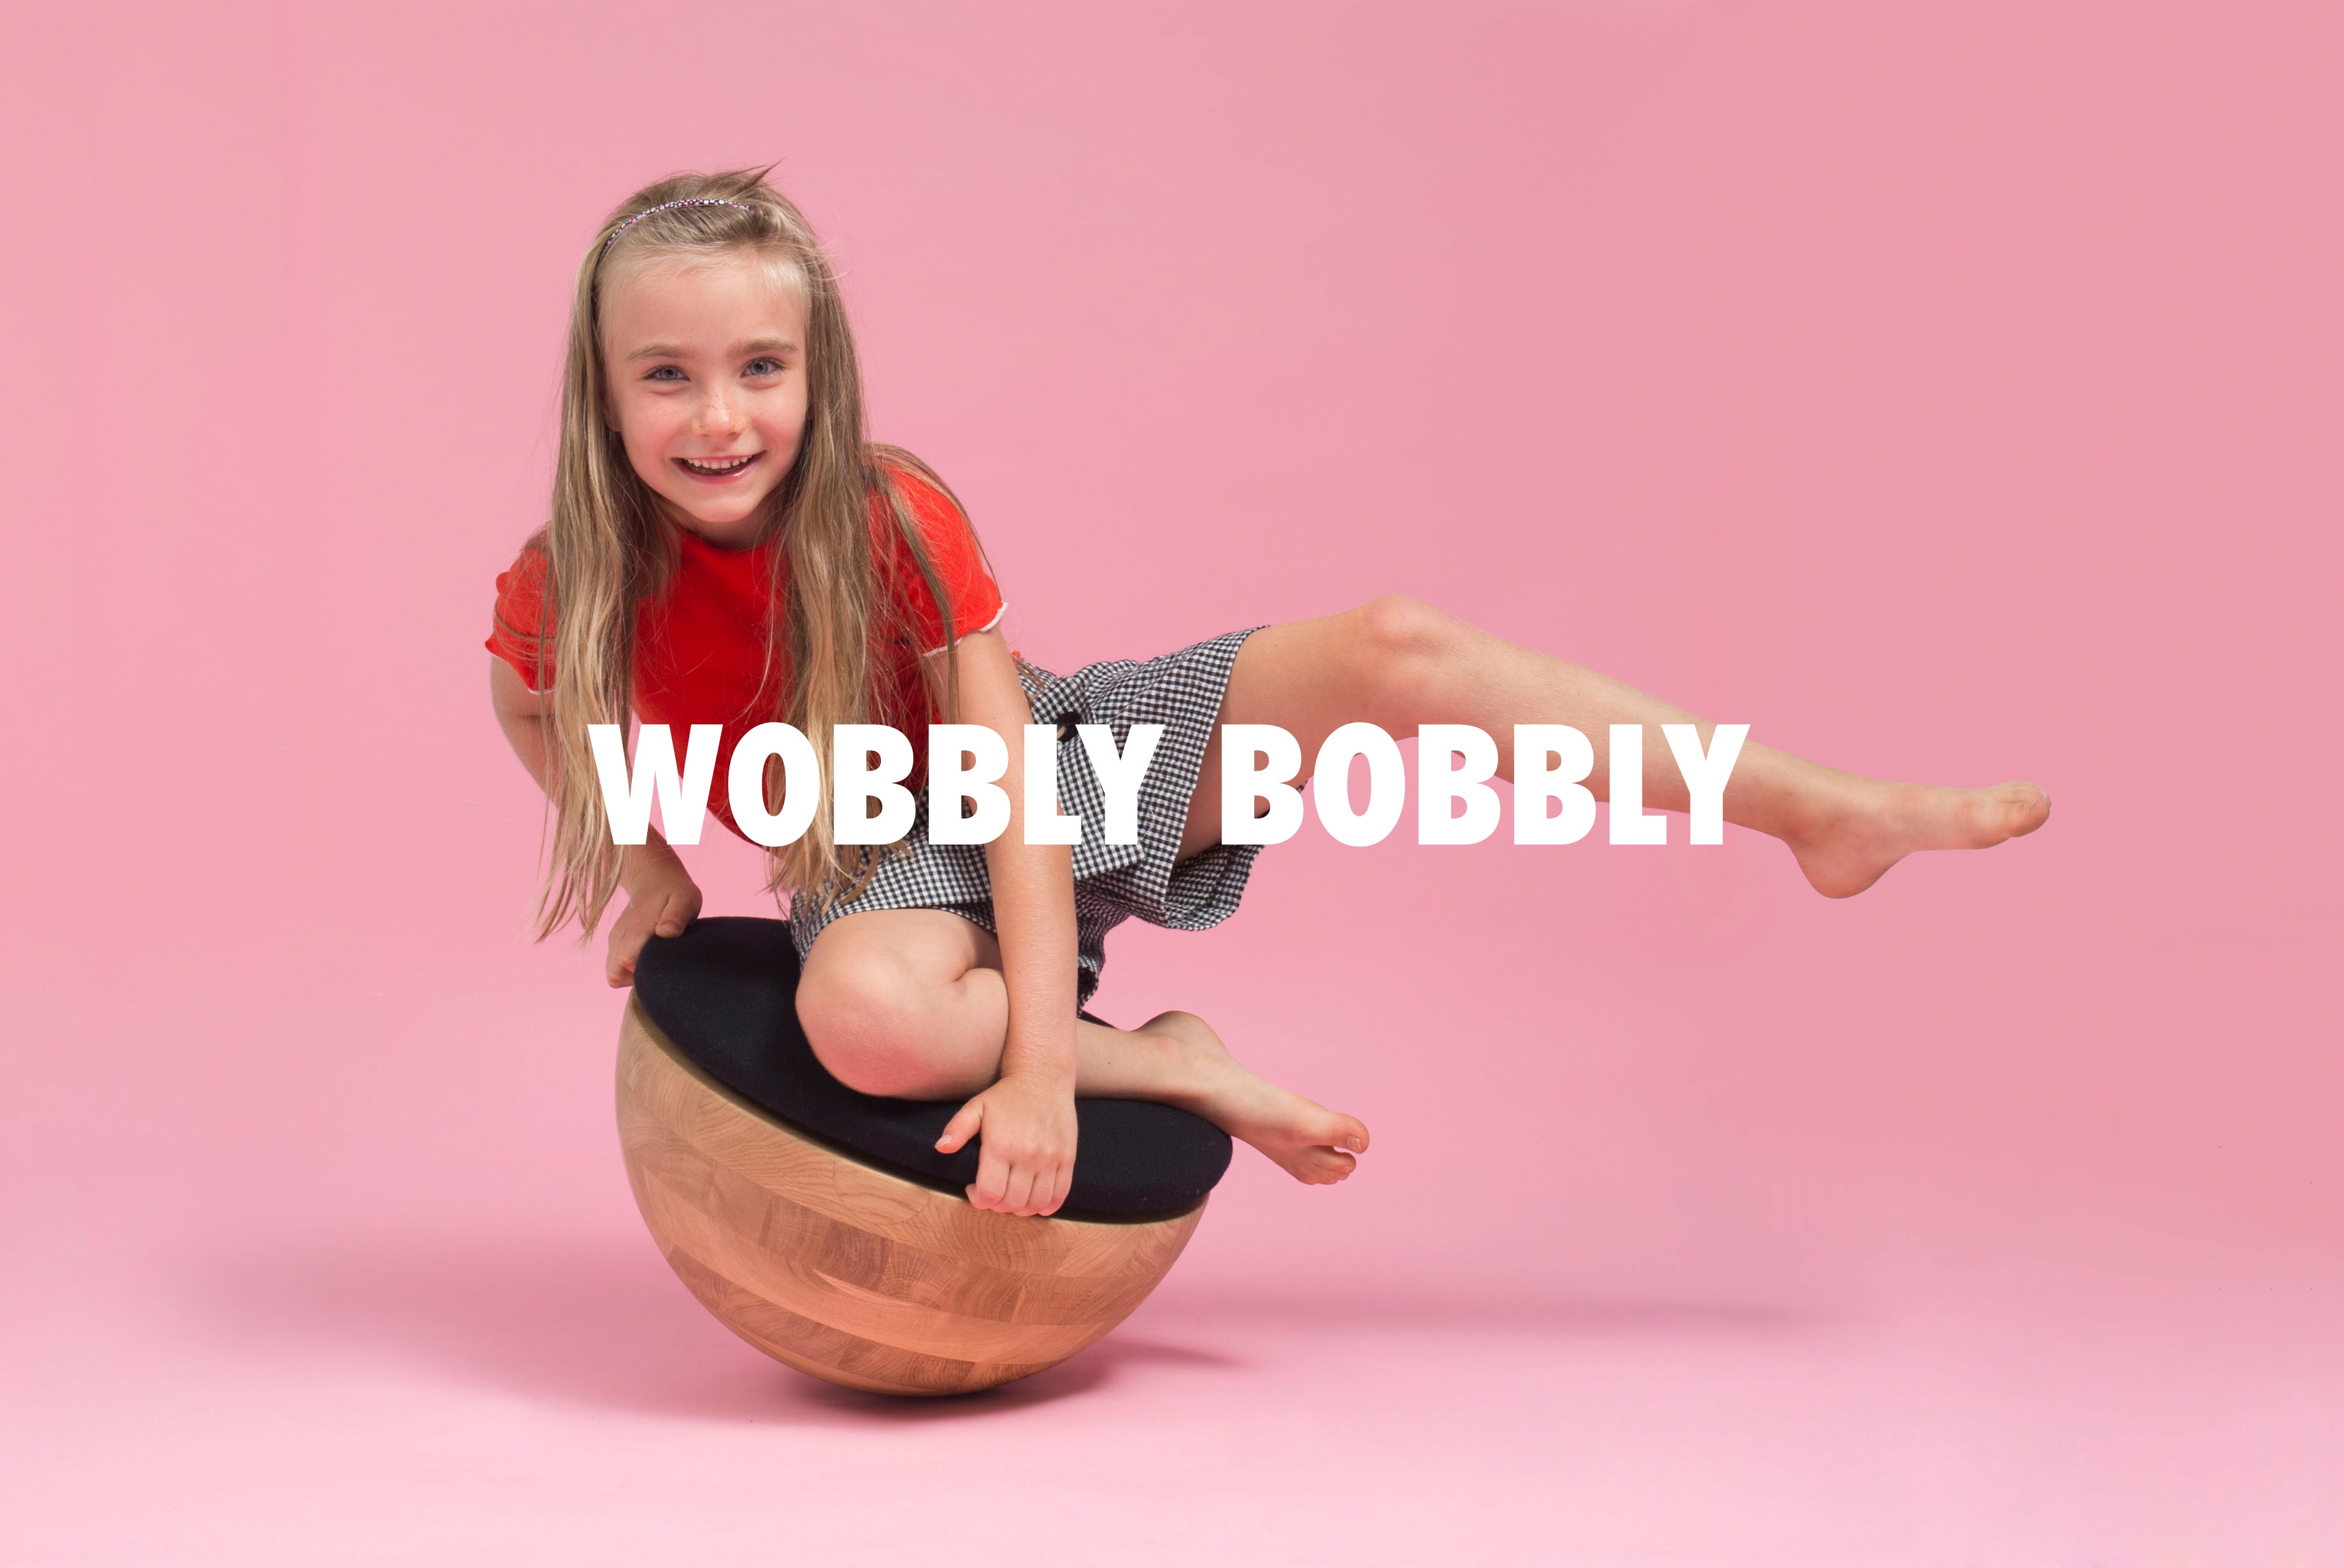 WOBBLY BOBBLY